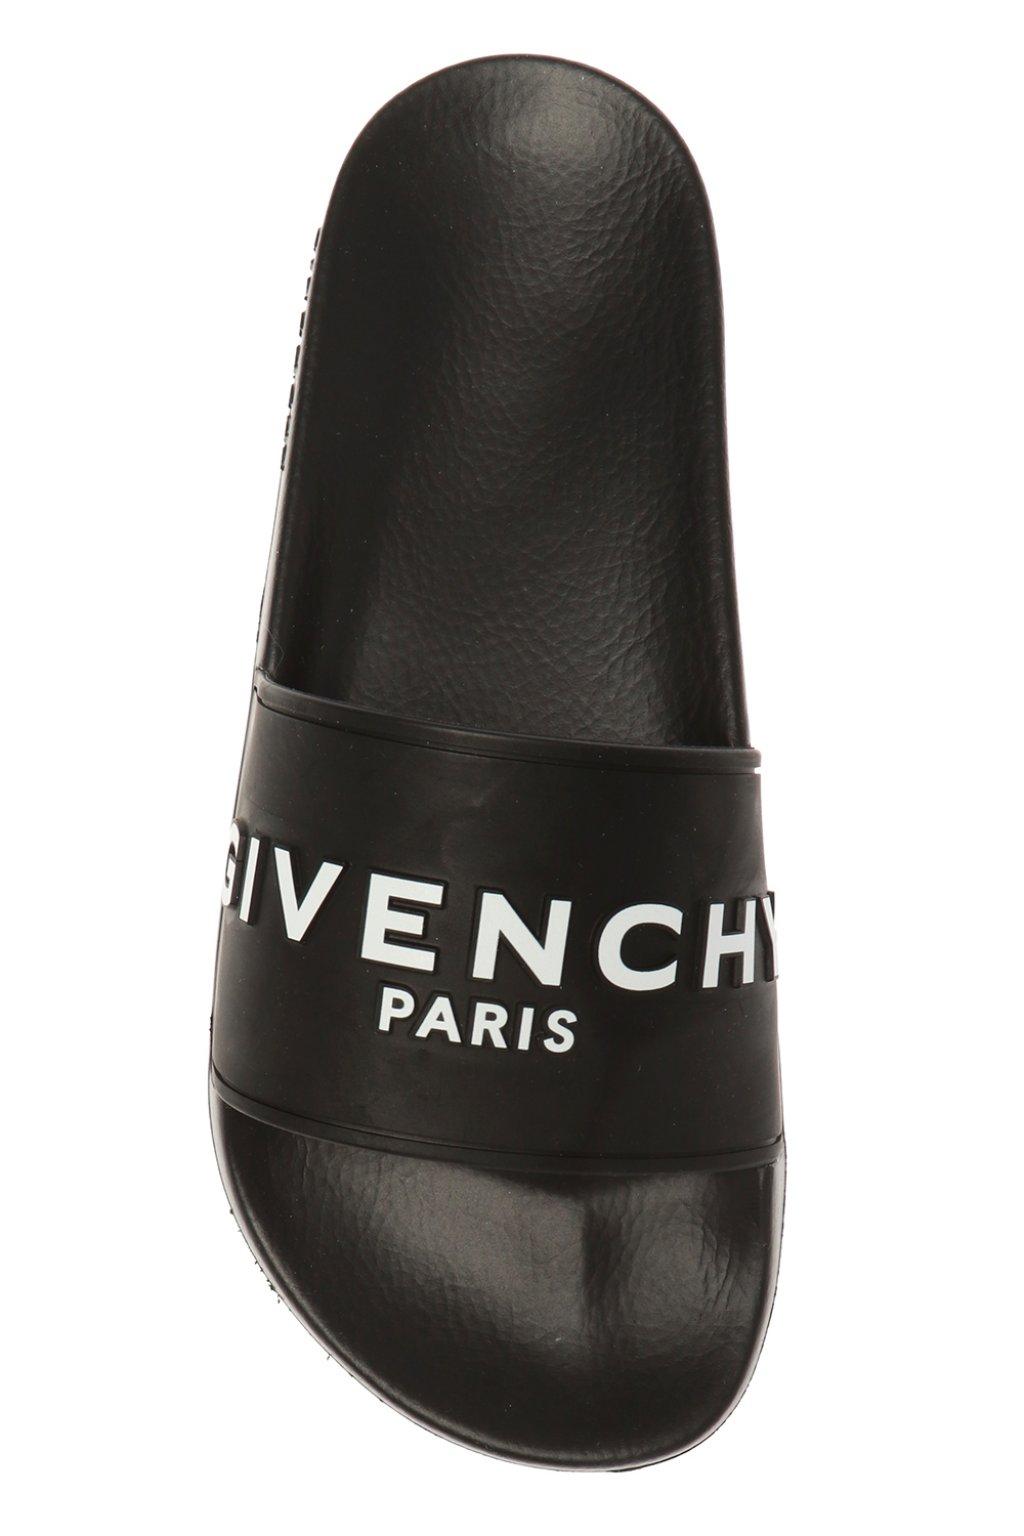 Givenchy Black Rubber Slide Sandals - Save 65% - Lyst